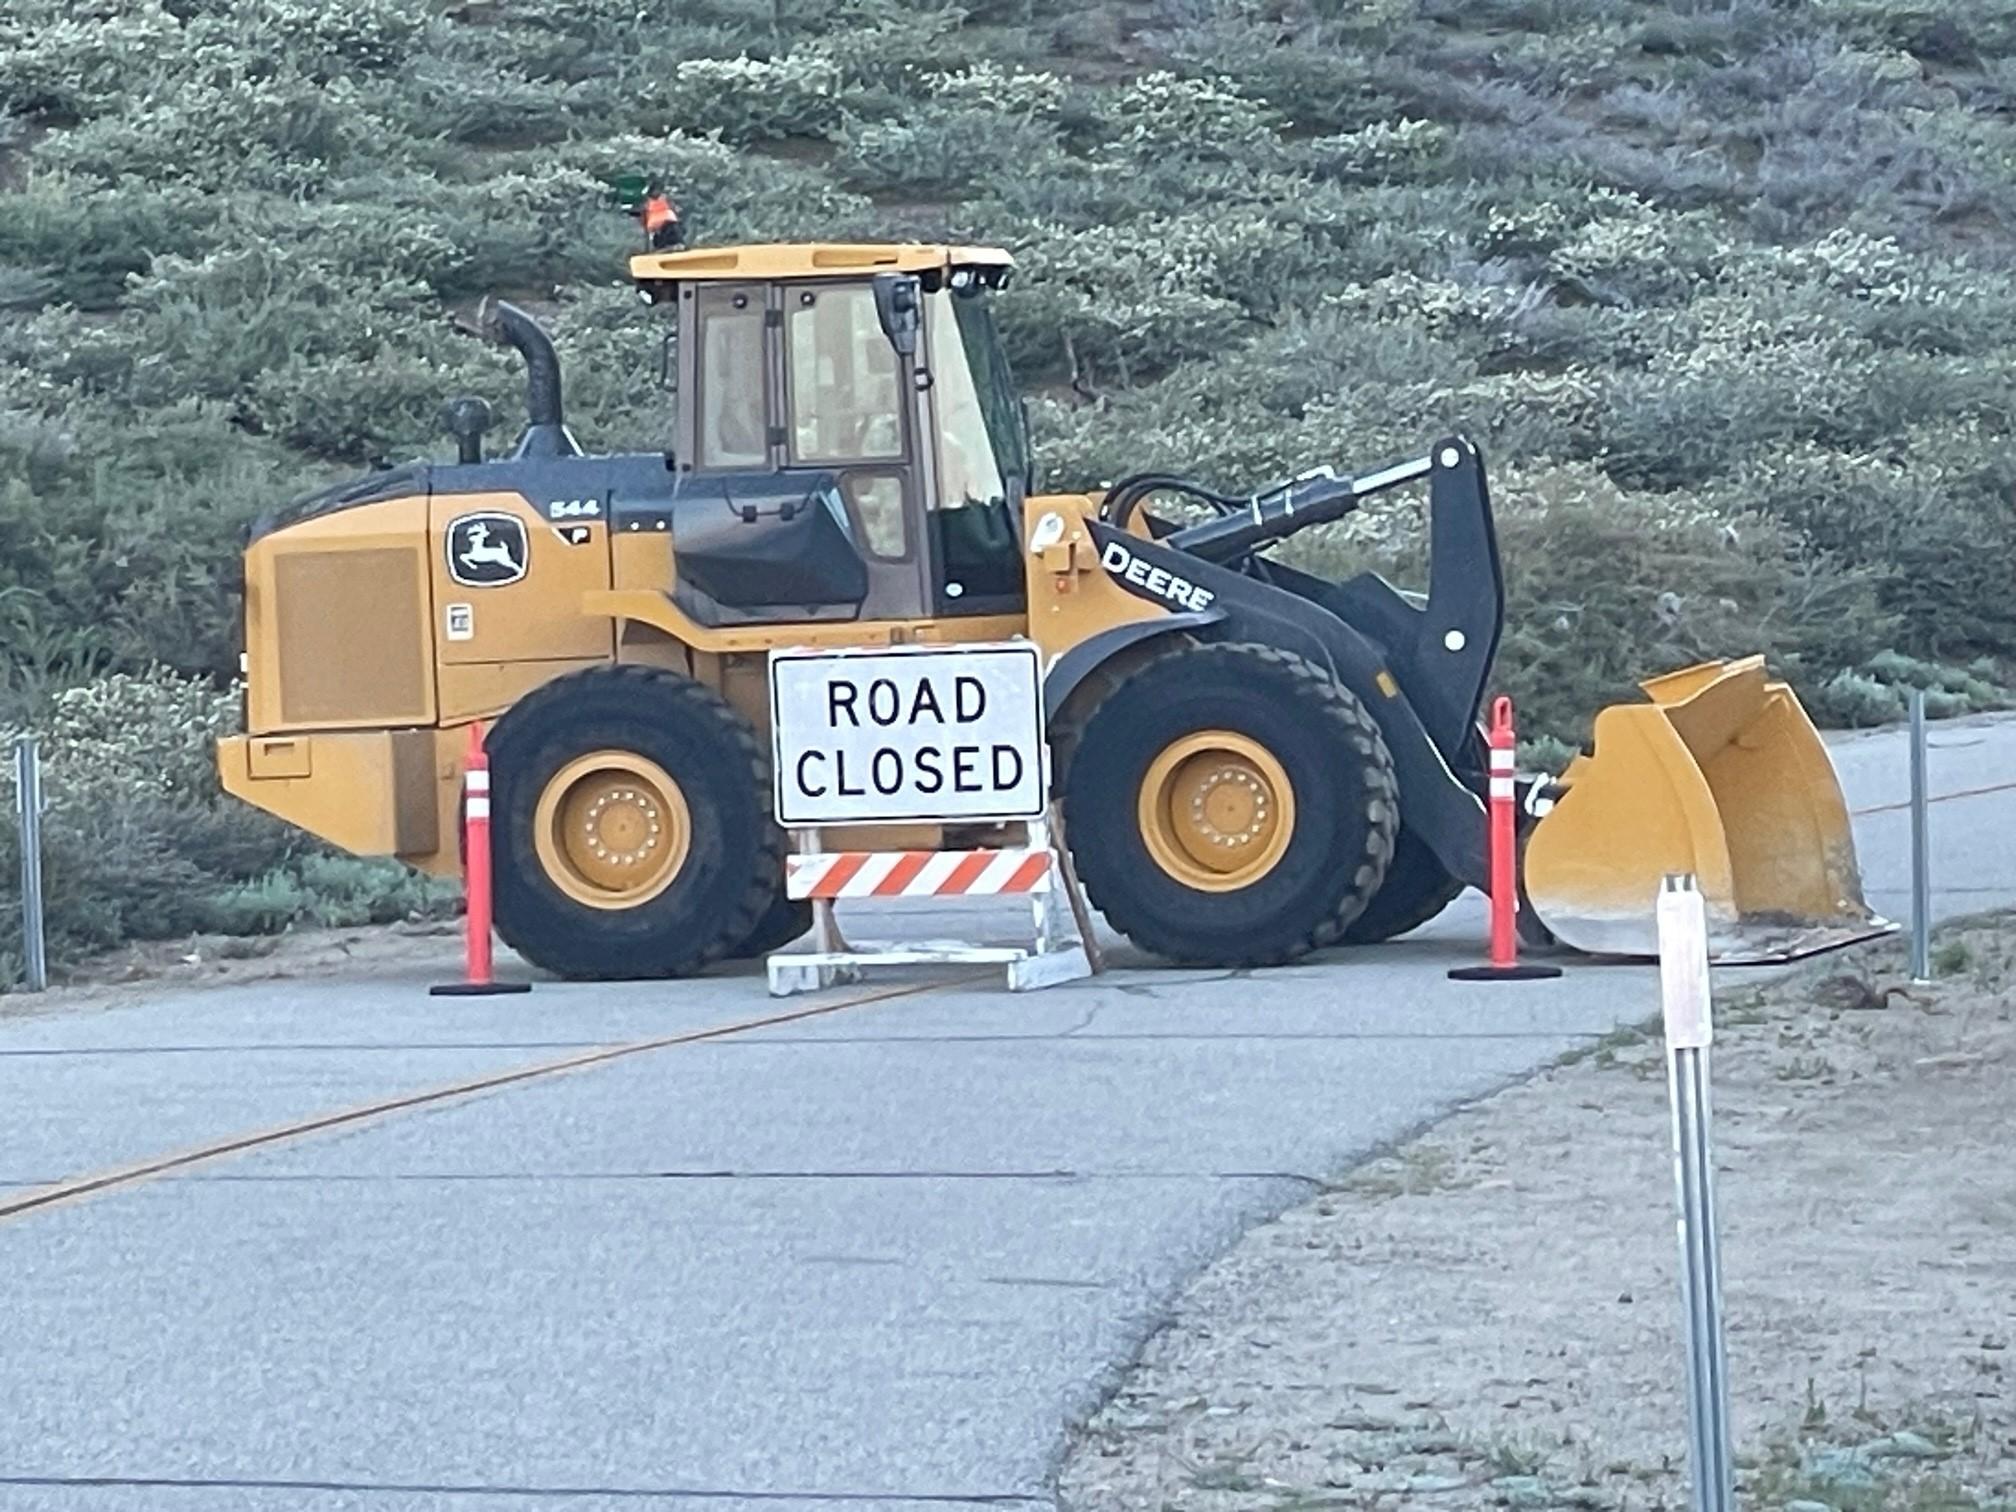 Image showing road closed sign alongside large dozer